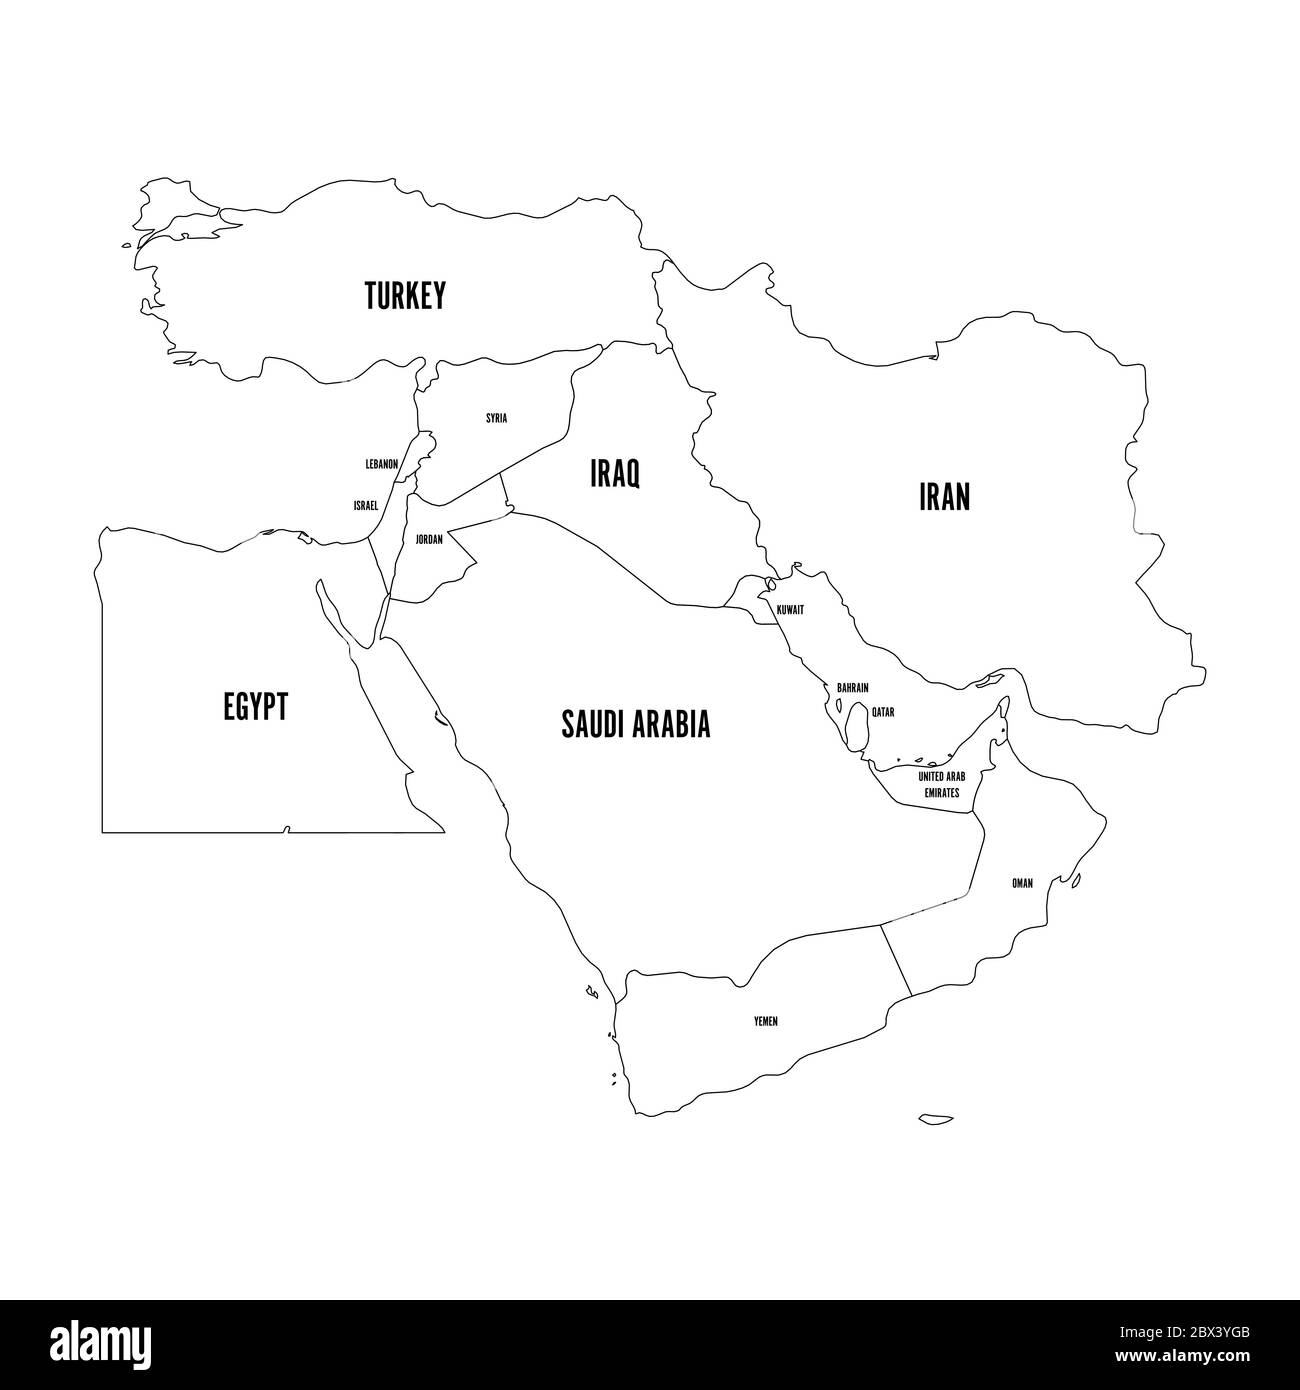 Mappa politica del Medio Oriente o del Vicino Oriente. Semplice immagine vettoriale a profilo piatto. Illustrazione Vettoriale